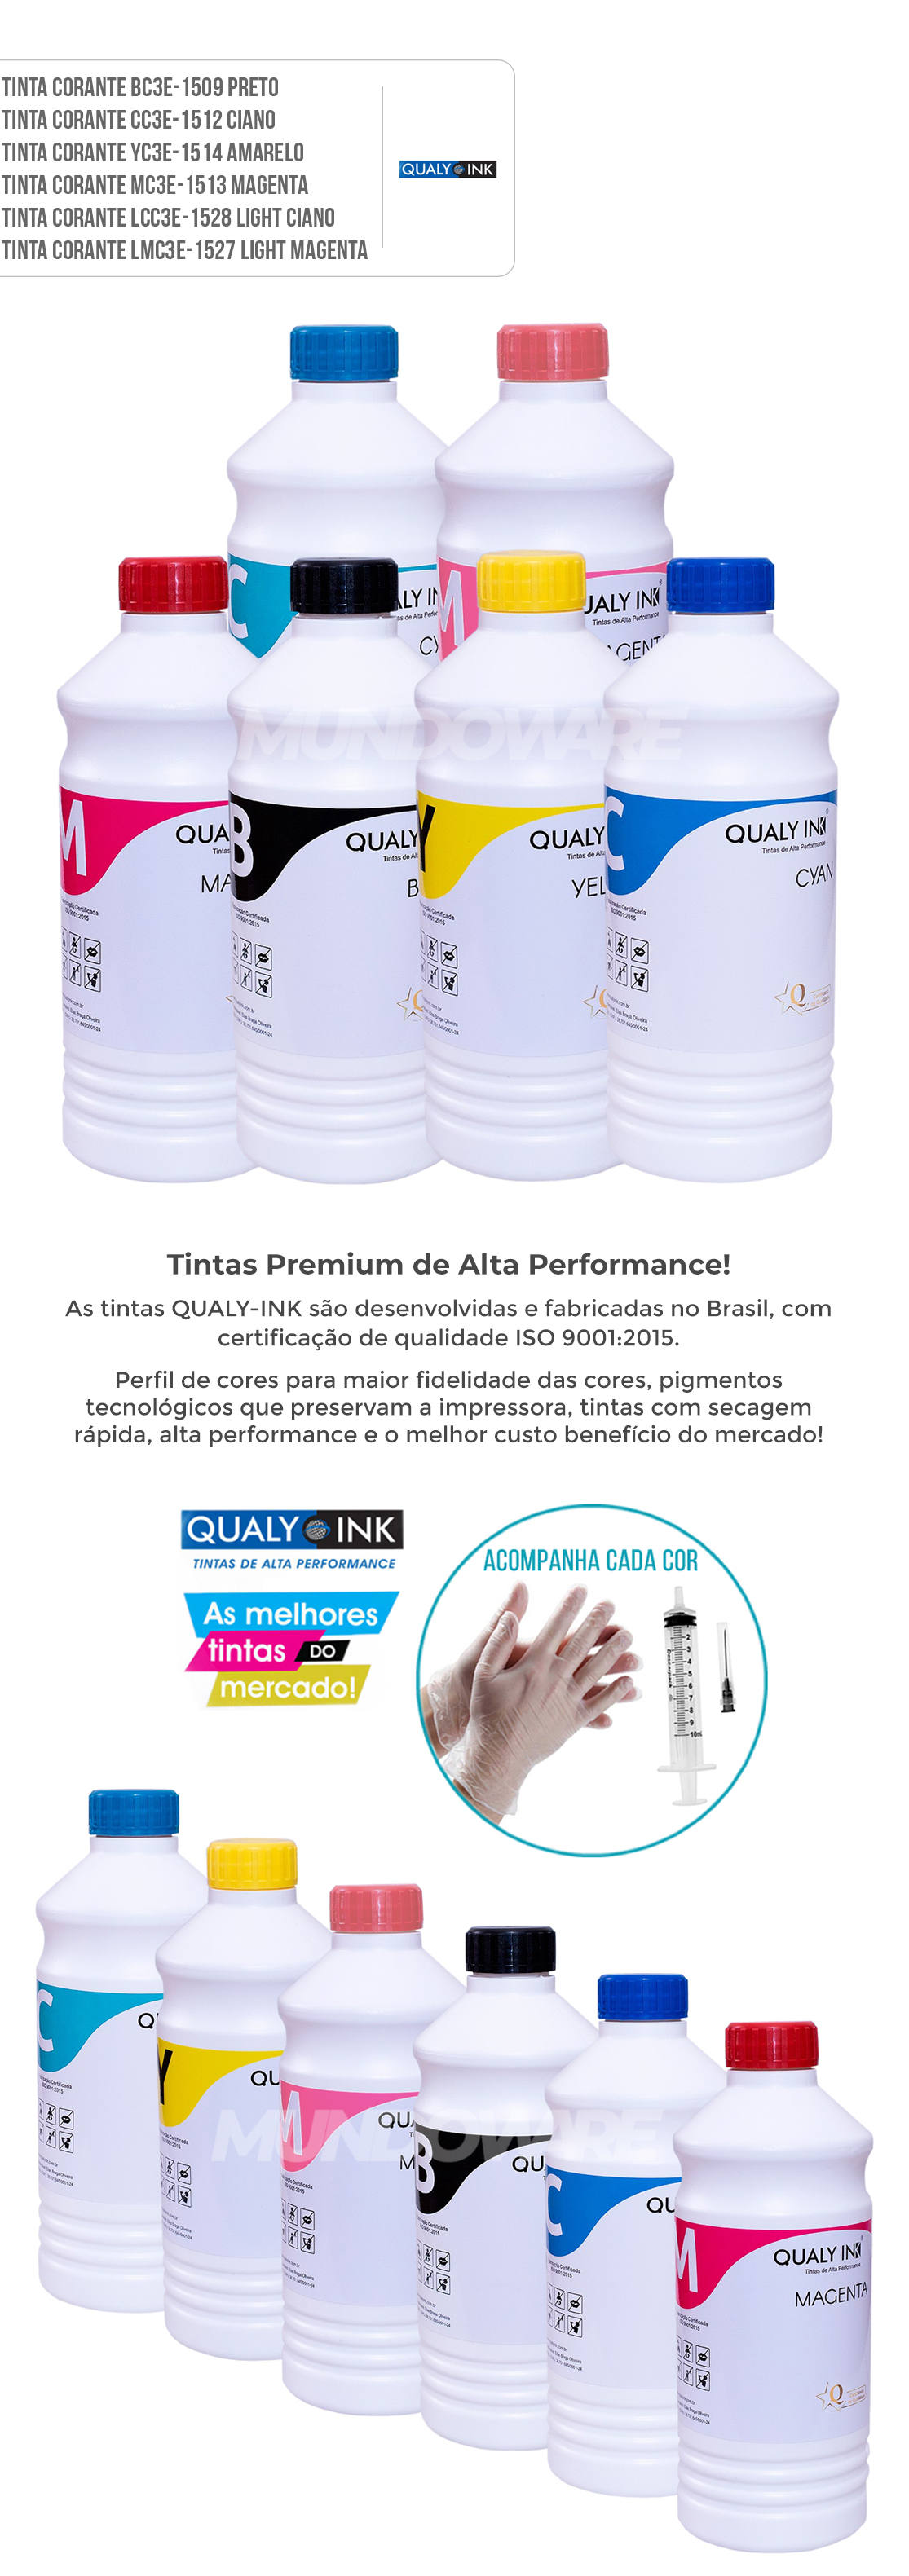 Kit Colorido 6 Cores de Refil de Tinta Qualy-Ink Corante para Epson série 673 impressoras L800 L805 L810 L850 L1800